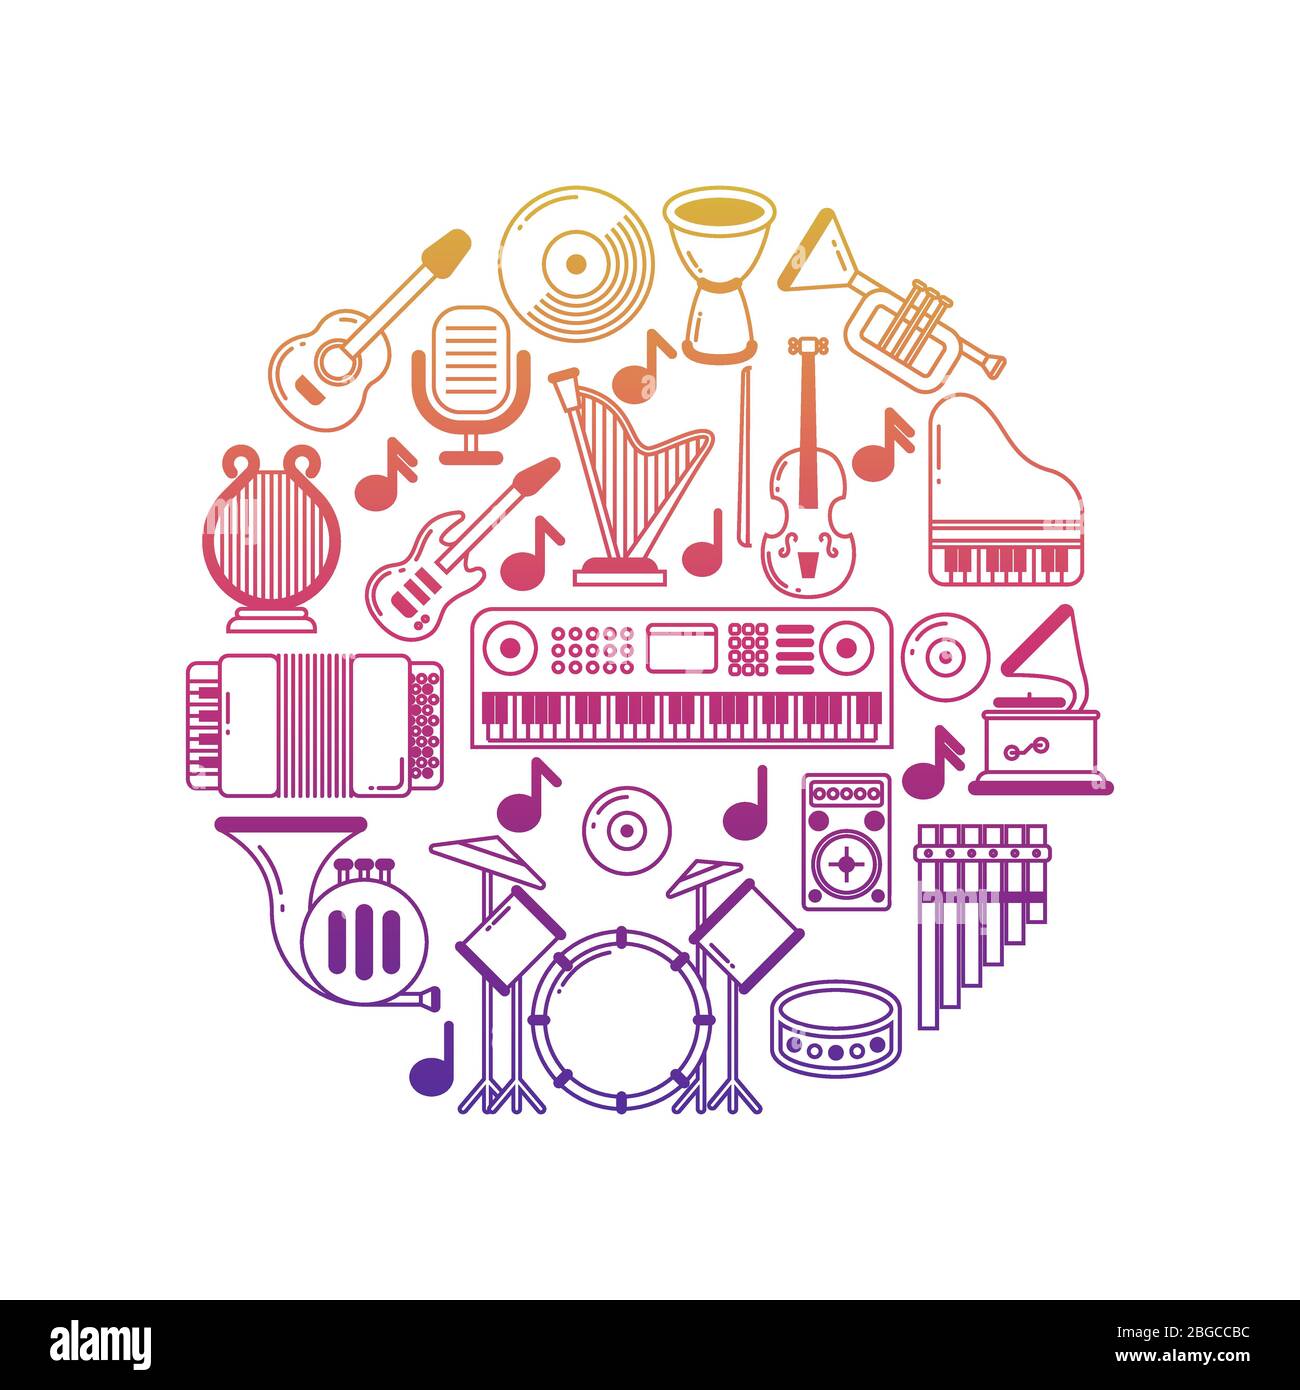 Helles Vektor-Musikposter mit Musikinstrumenten-Icons in runder Illustration Stock Vektor